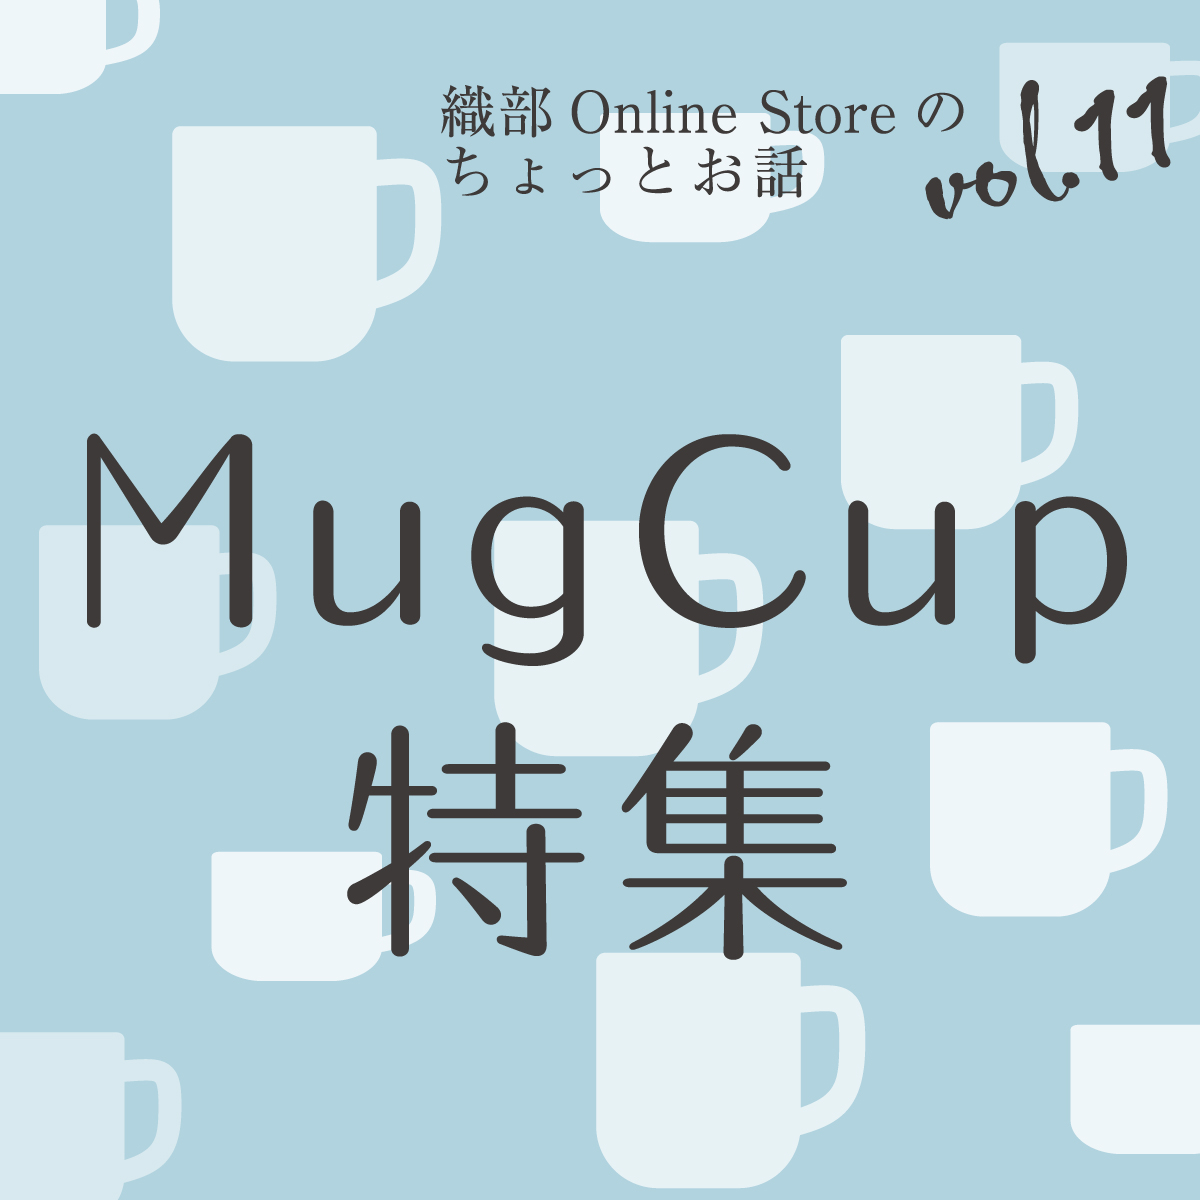 織部 Online Storeのちょっとお話 Vol.11『Mug Cup特集』 